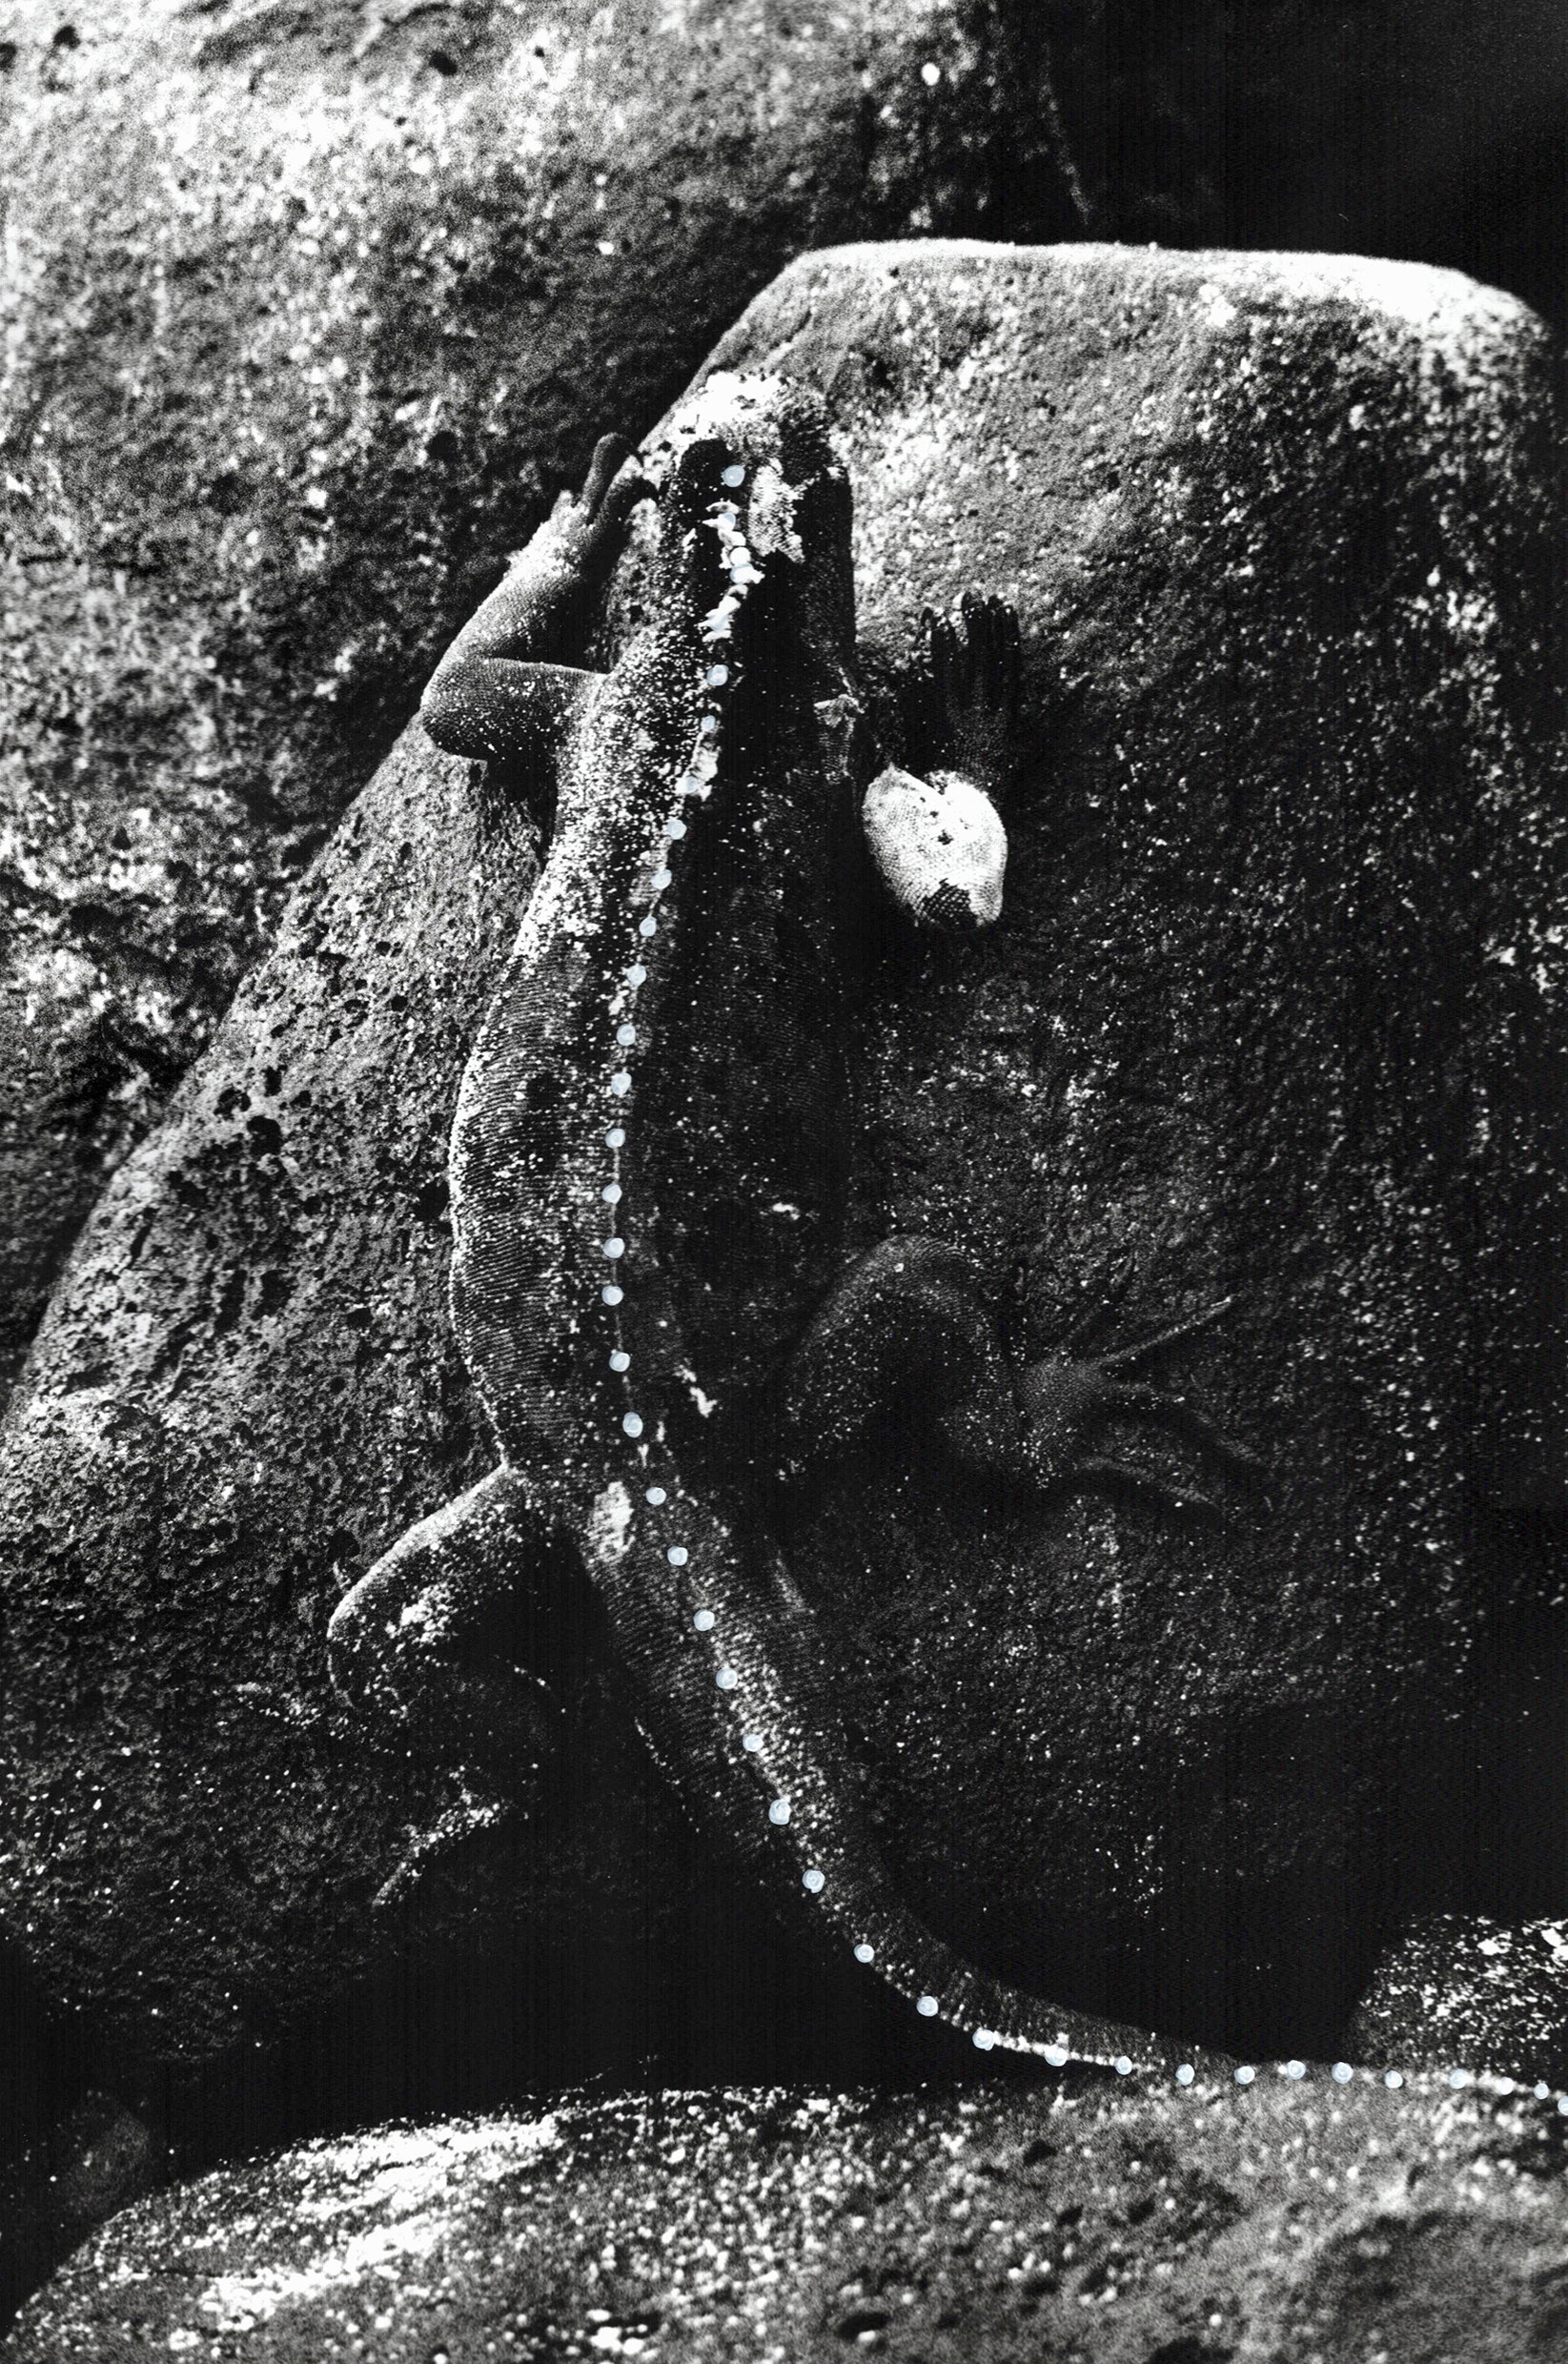 Marine Iguana 
(2022, 36 x 24 cm, silver print)